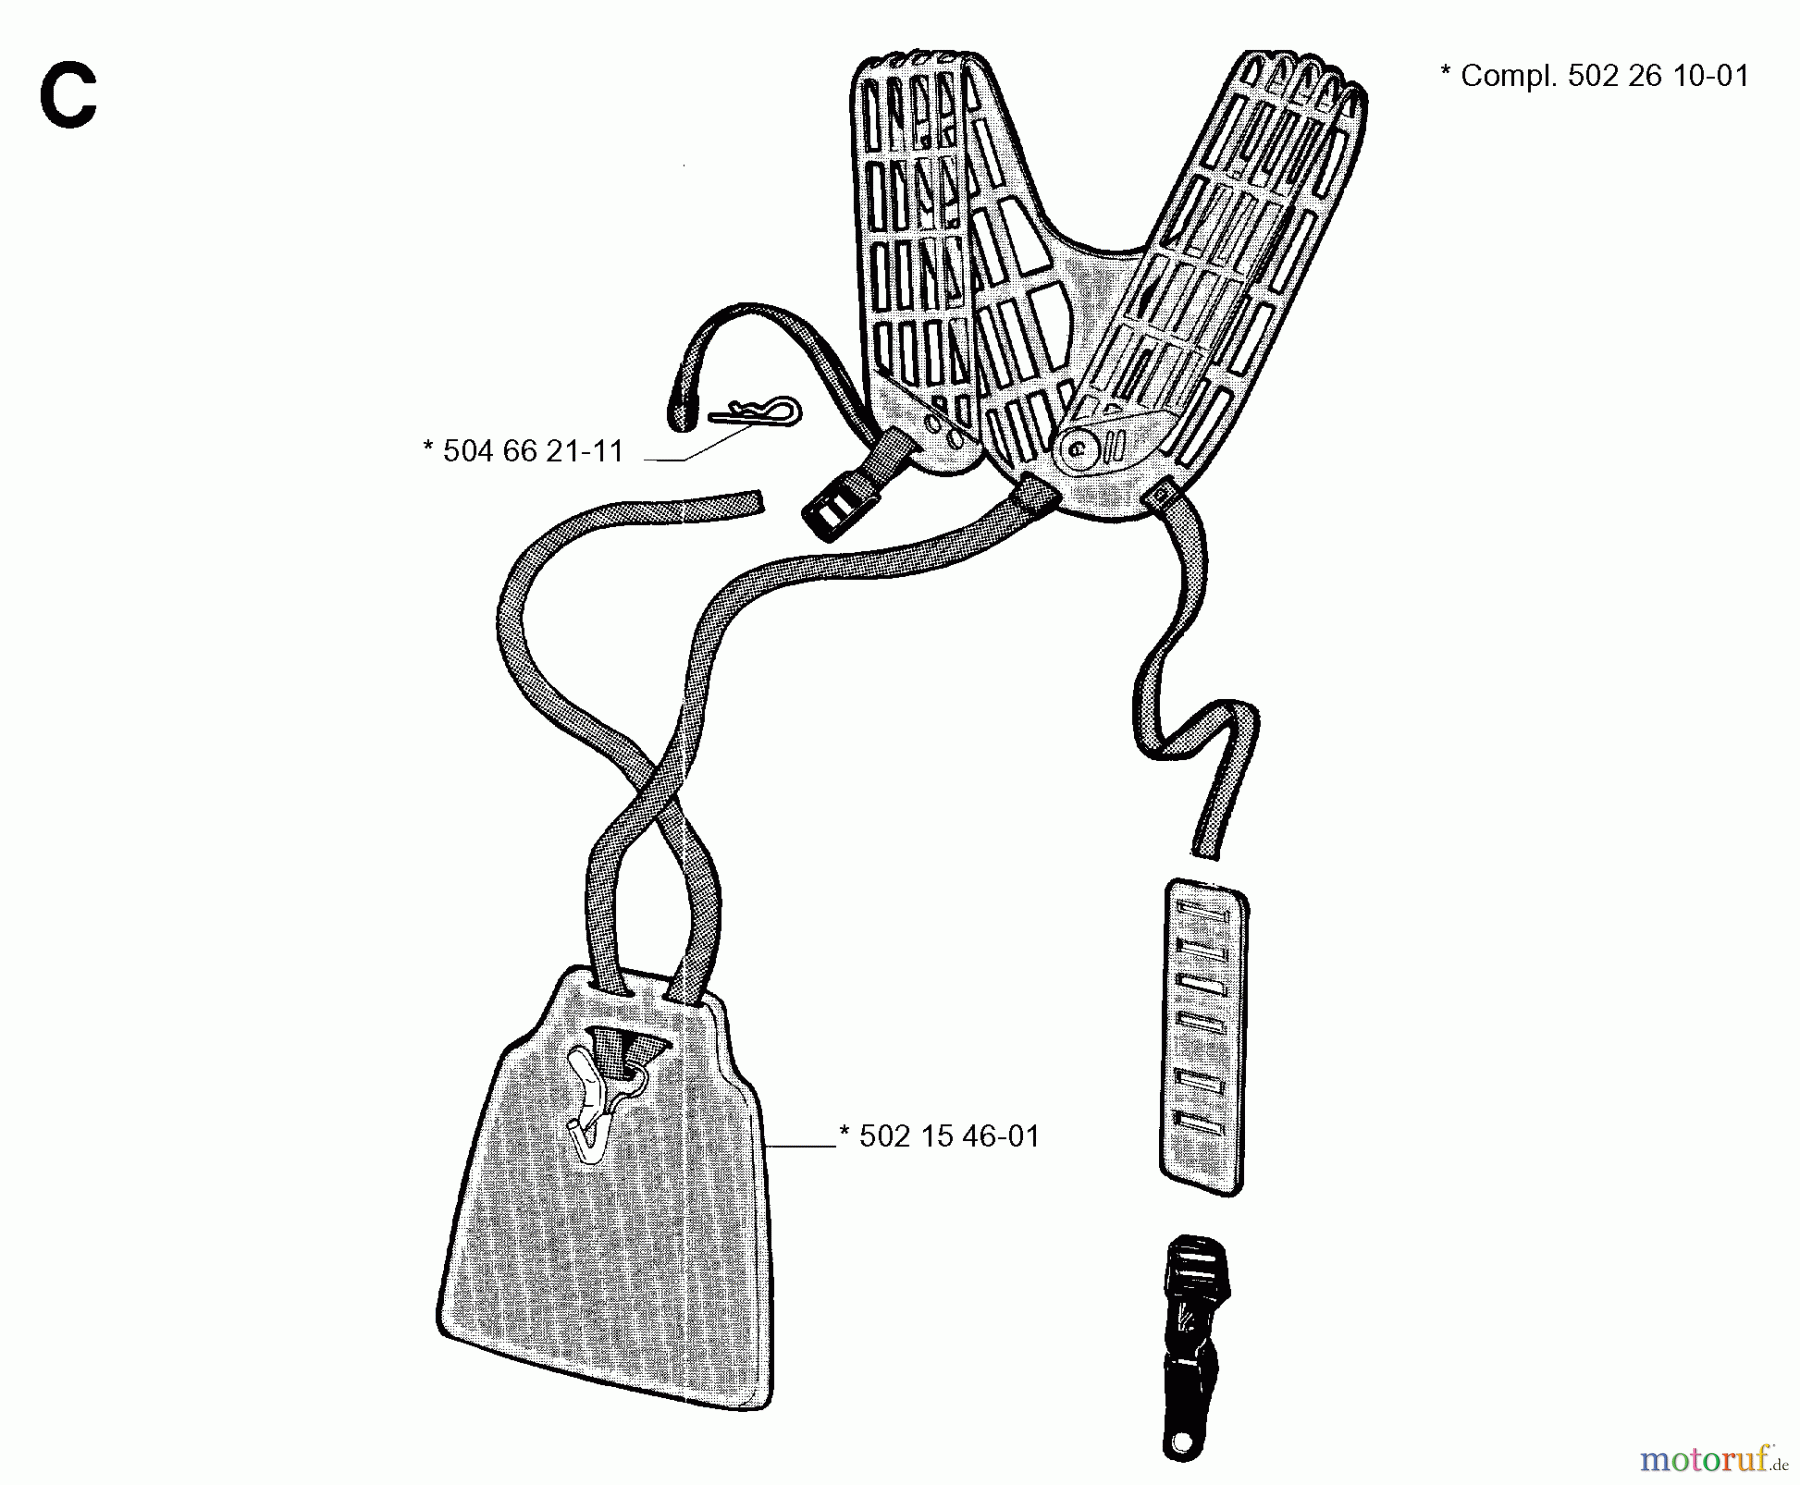  Jonsered Motorsensen, Trimmer GR41 - Jonsered String/Brush Trimmer (1991-03) HARNESS